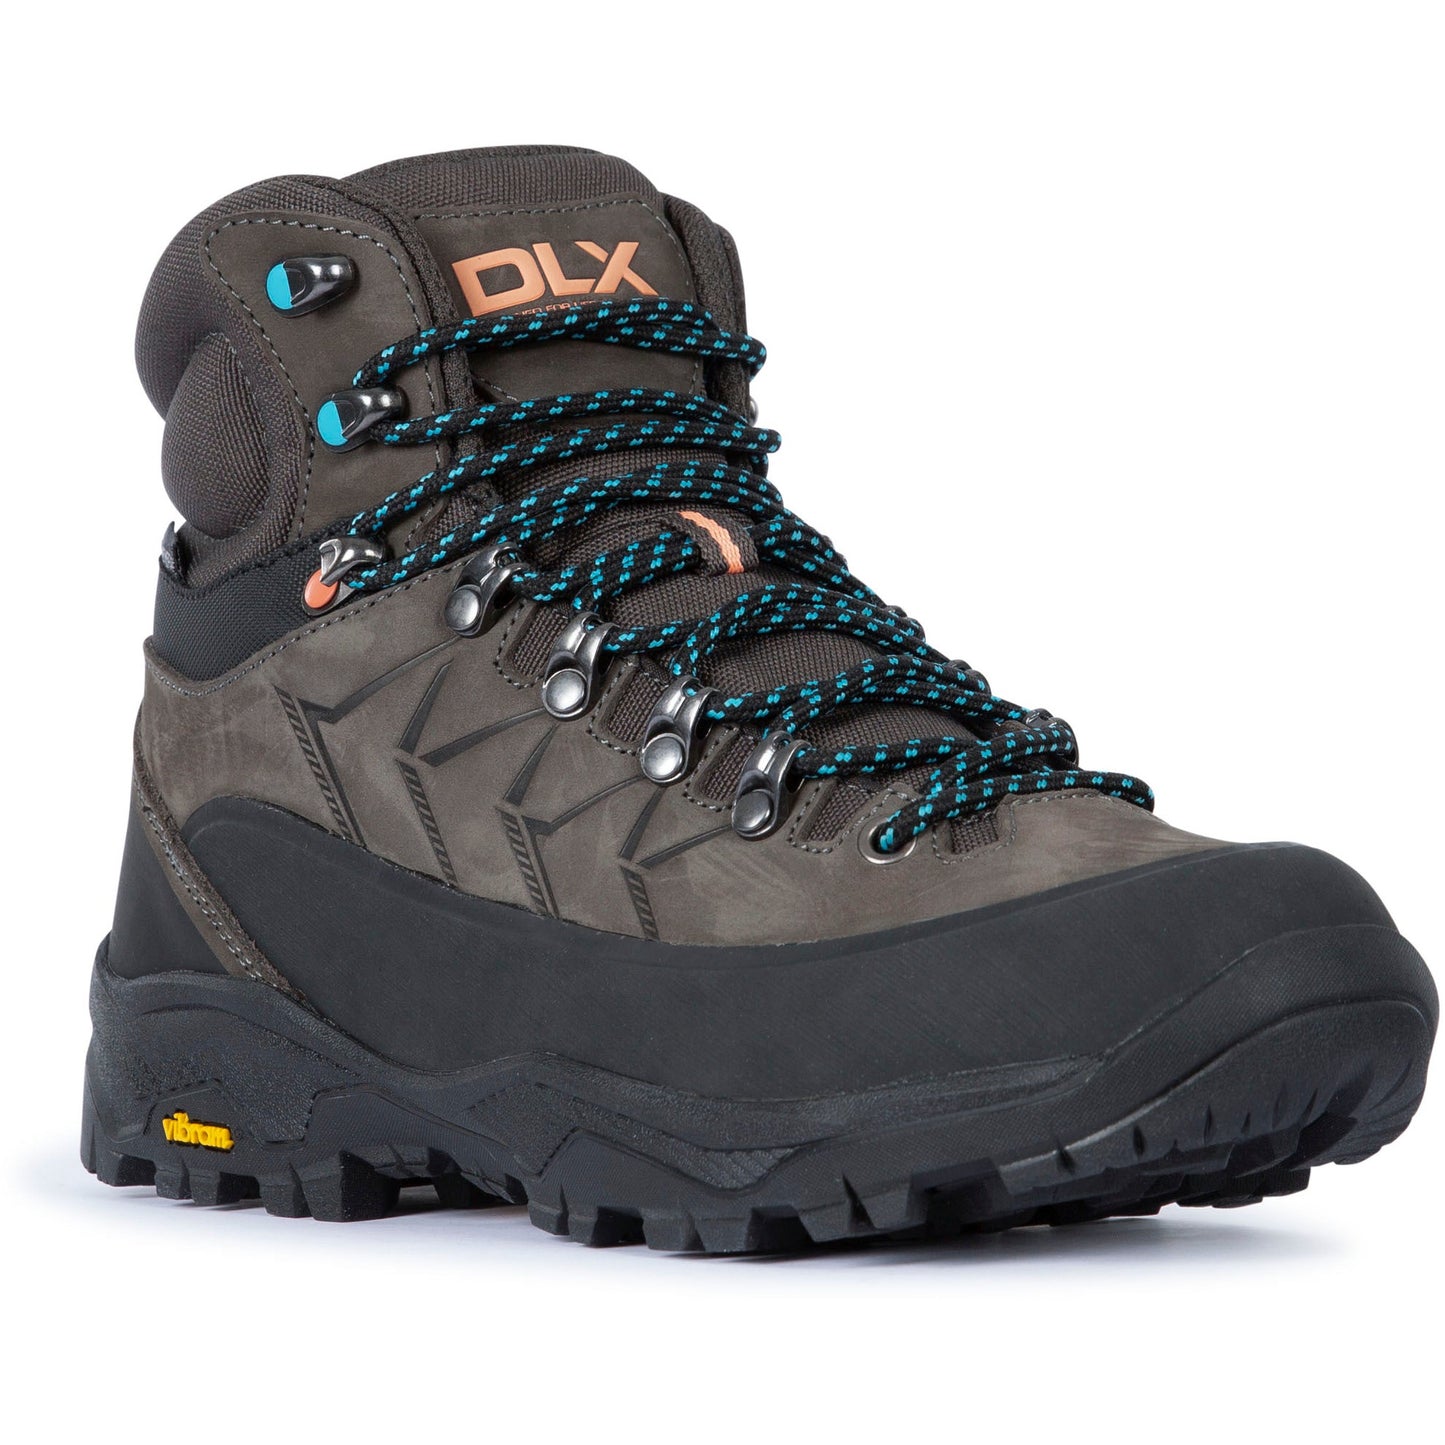 Tartyn Women's DLX Waterproof Hiking Boots in Black